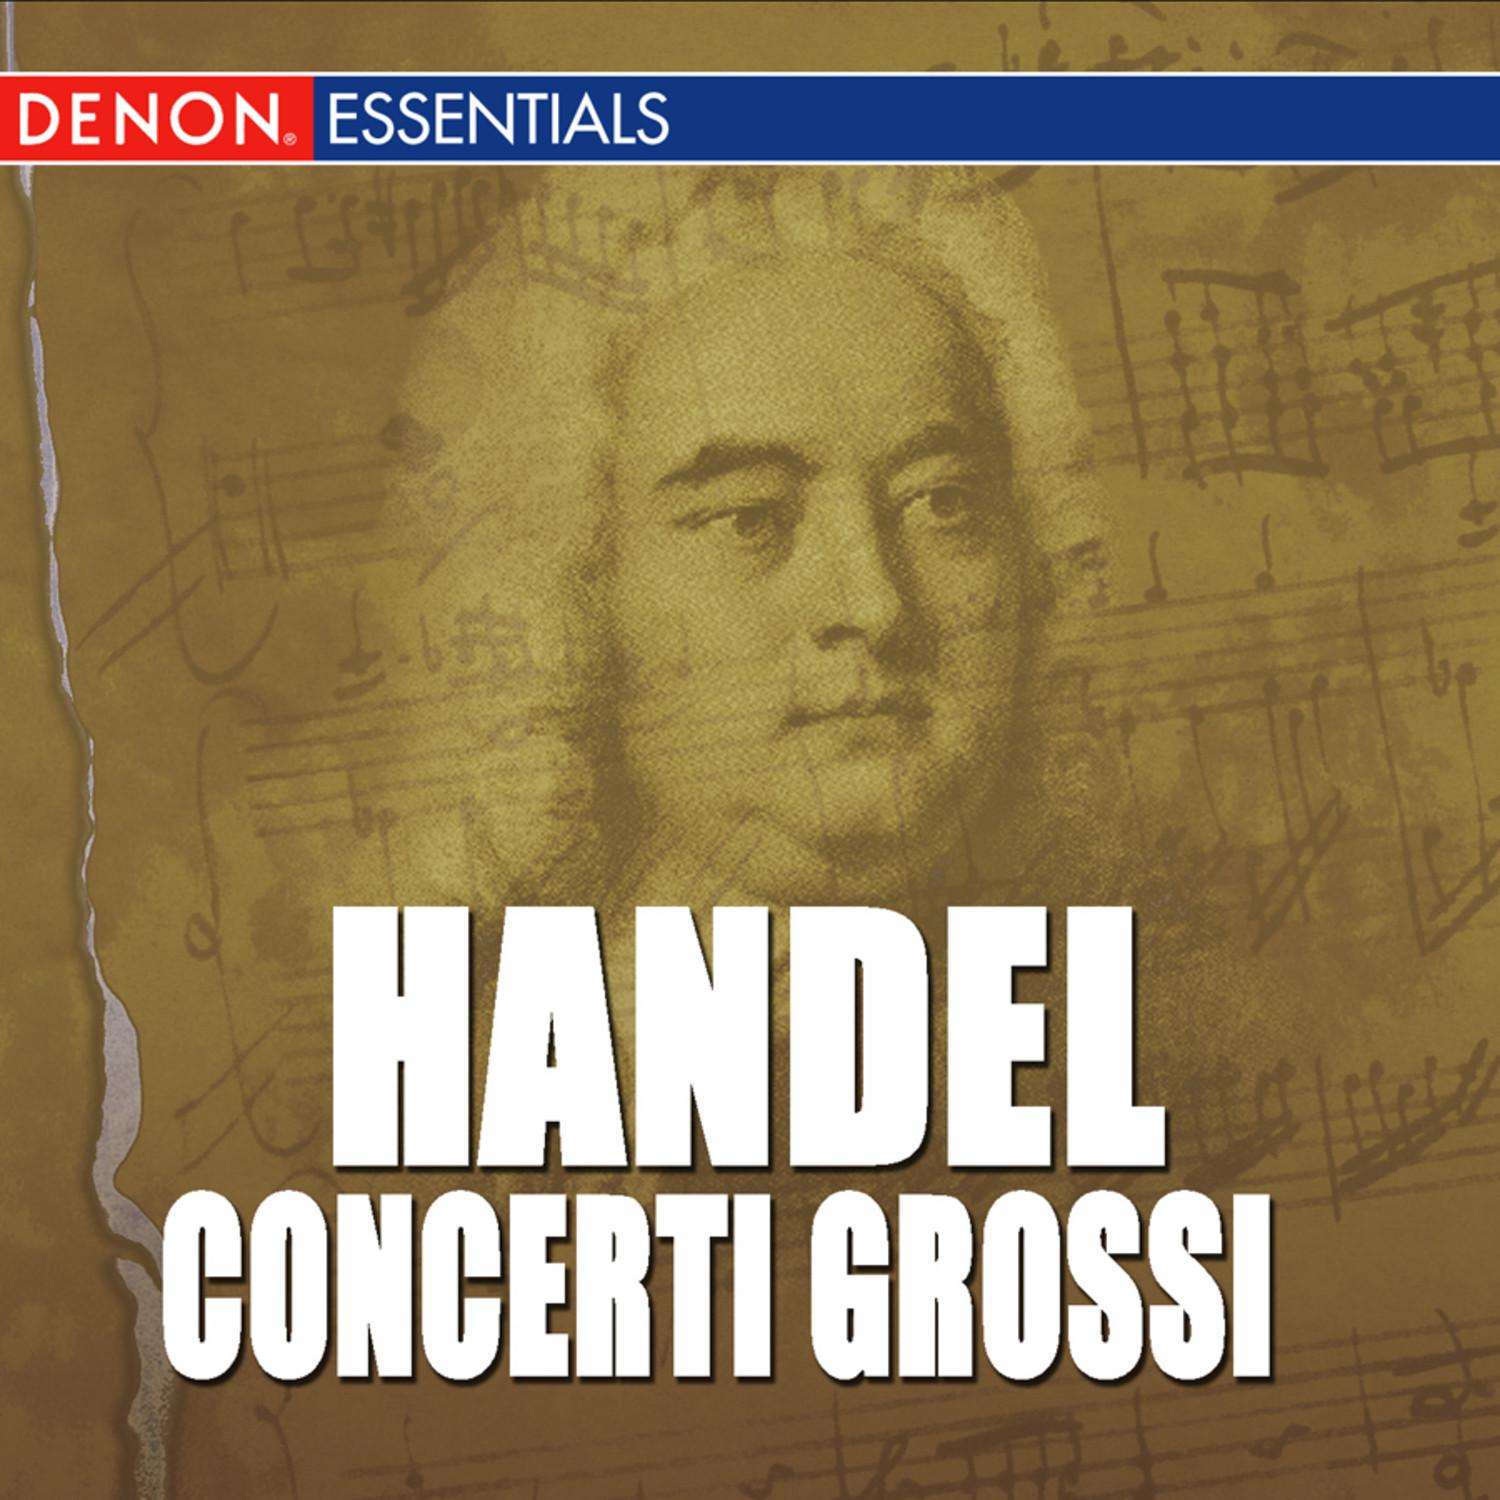 Concerto Grosso, Op. 6: No. 12 in B Minor, HWV 330: III. Larghetto, e piano